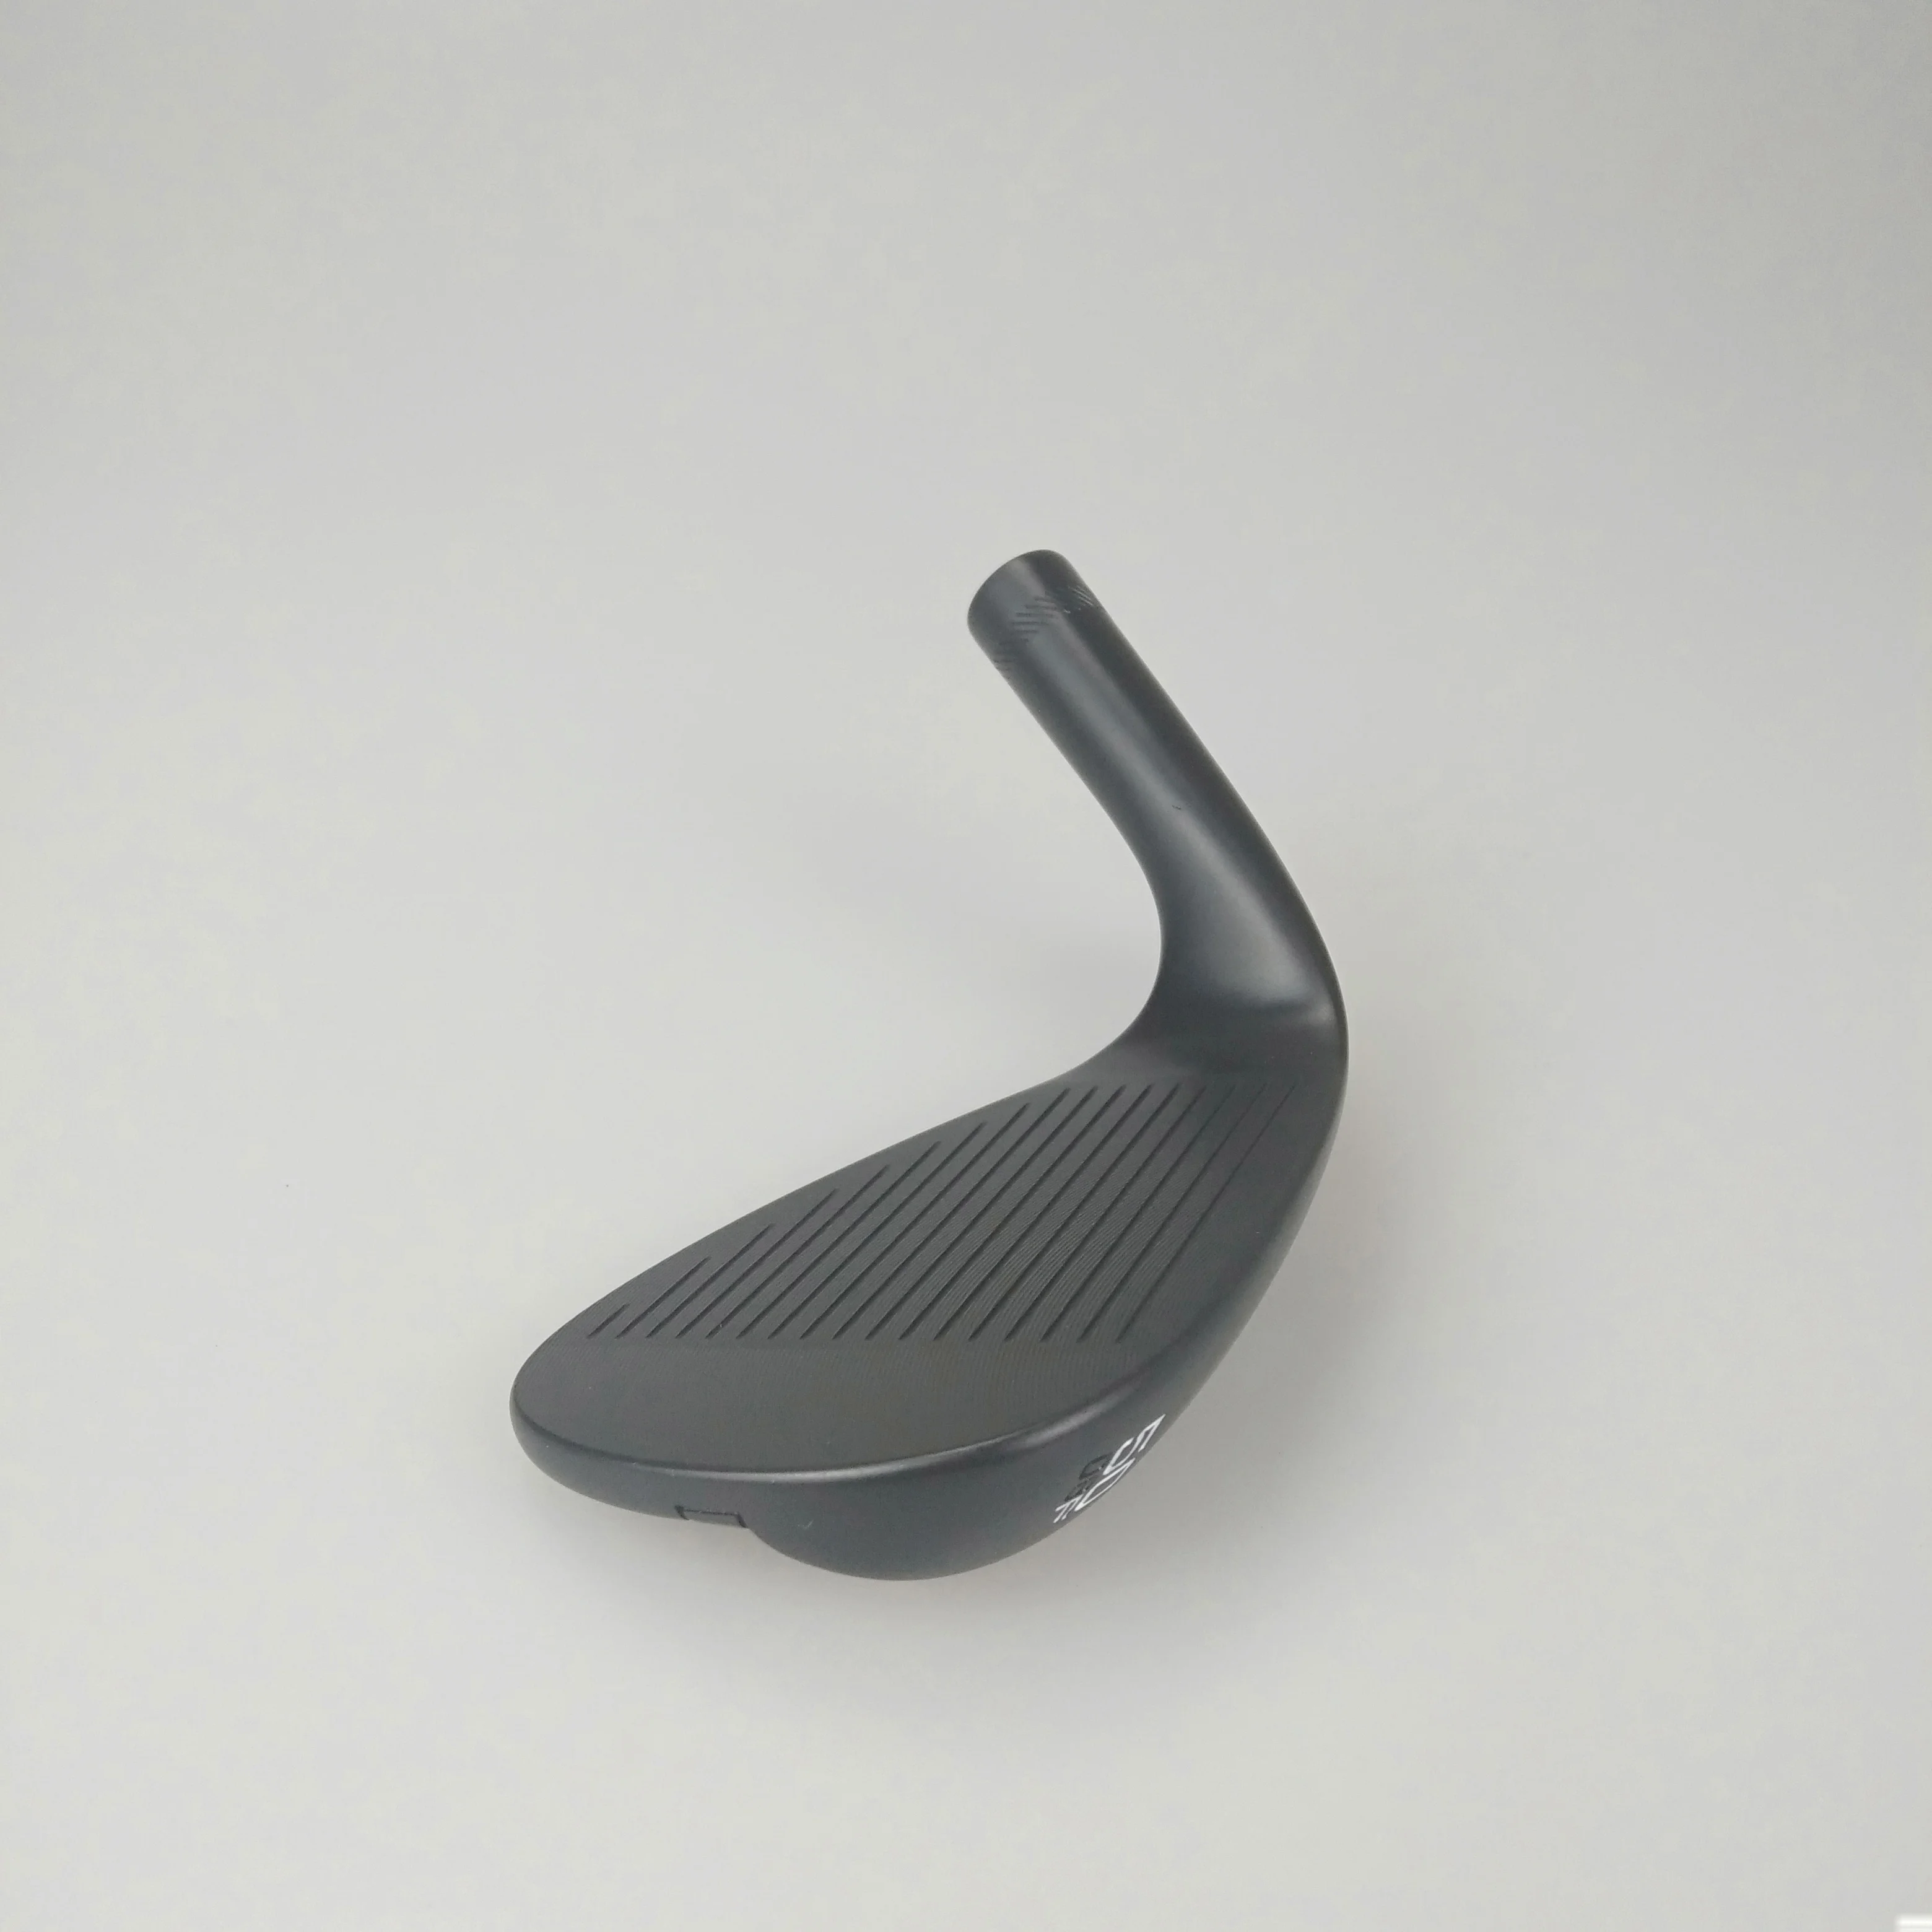 Клюшки для гольфа черные SM8 клинья 50-60 графитовые стержни клюшки для гольфа с головкой Деревянные клюшки бесплатная доставка